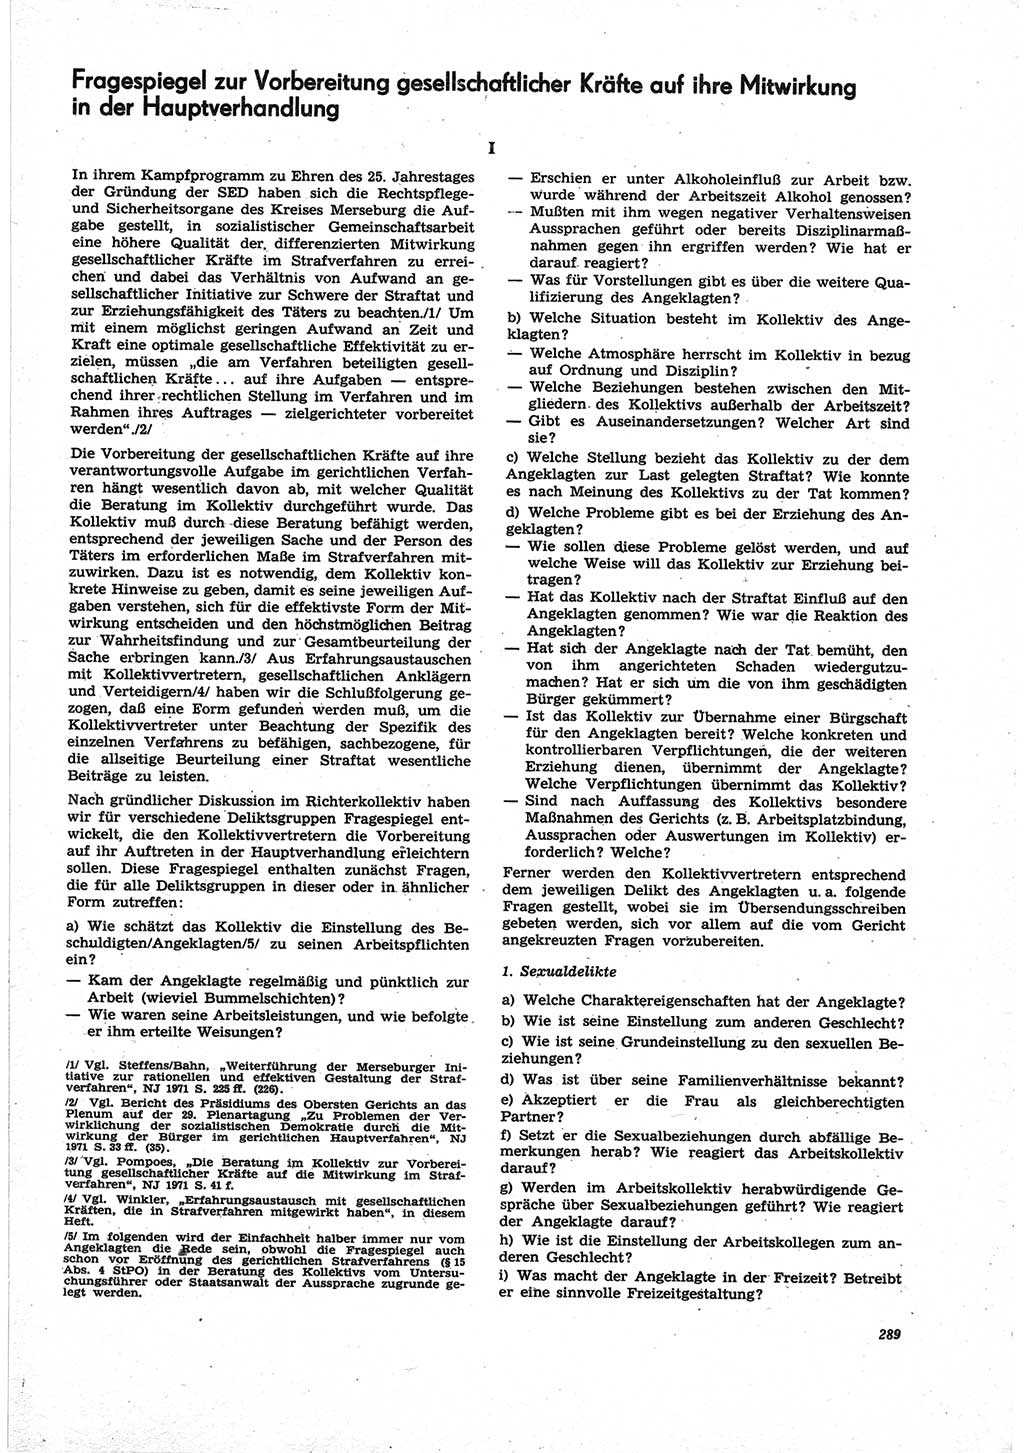 Neue Justiz (NJ), Zeitschrift für Recht und Rechtswissenschaft [Deutsche Demokratische Republik (DDR)], 25. Jahrgang 1971, Seite 289 (NJ DDR 1971, S. 289)